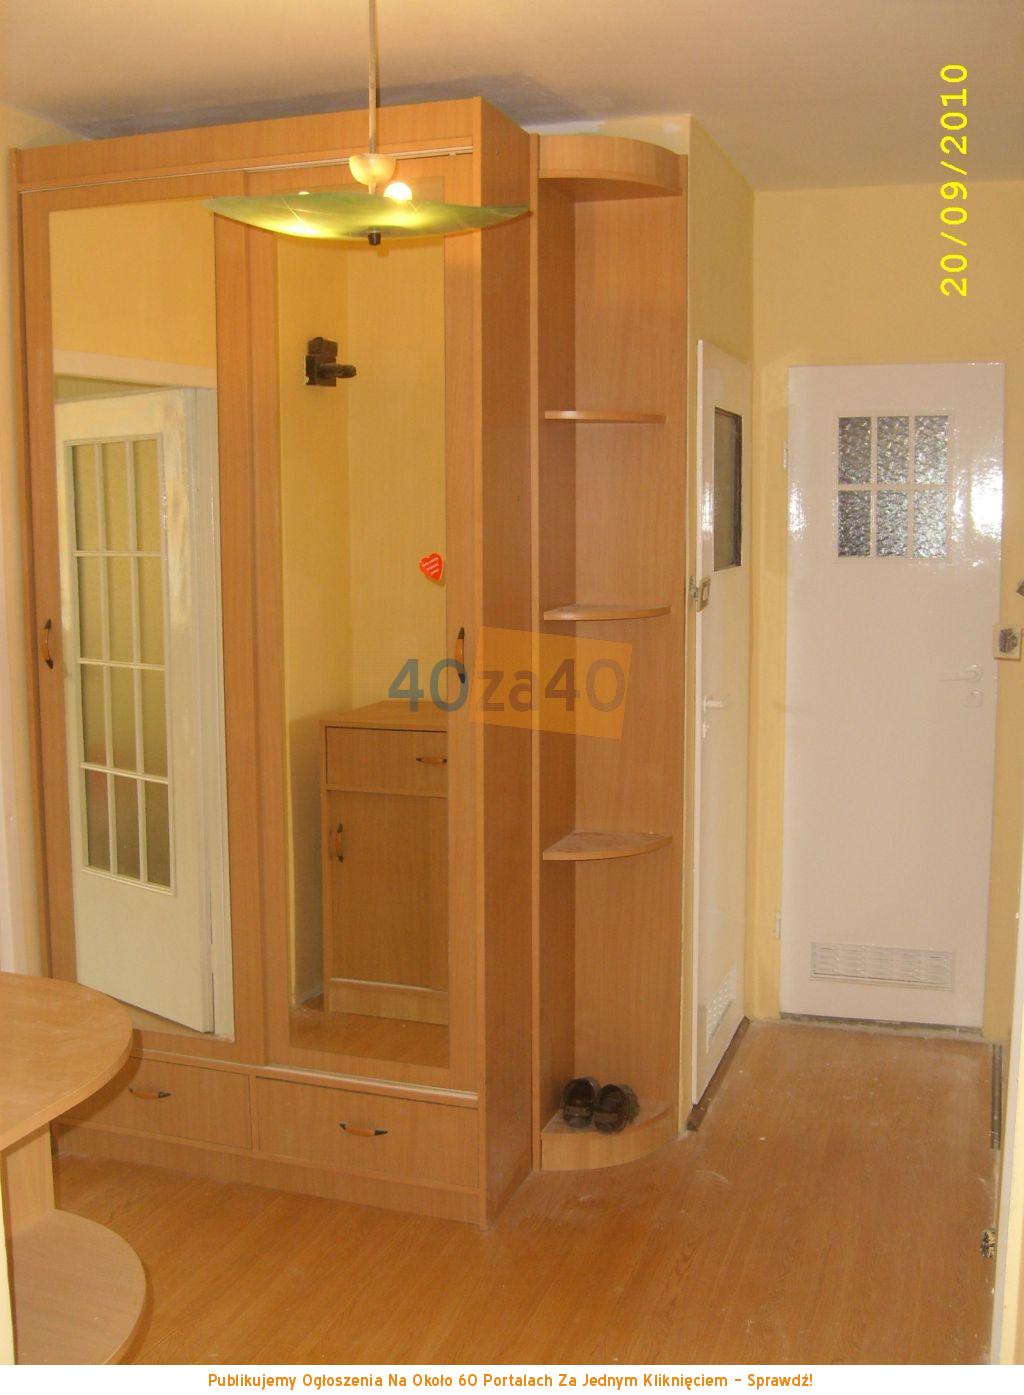 Mieszkanie do wynajęcia, pokoje: 3, cena: 1 000,00 PLN, Goleniów, kontakt: 609384998